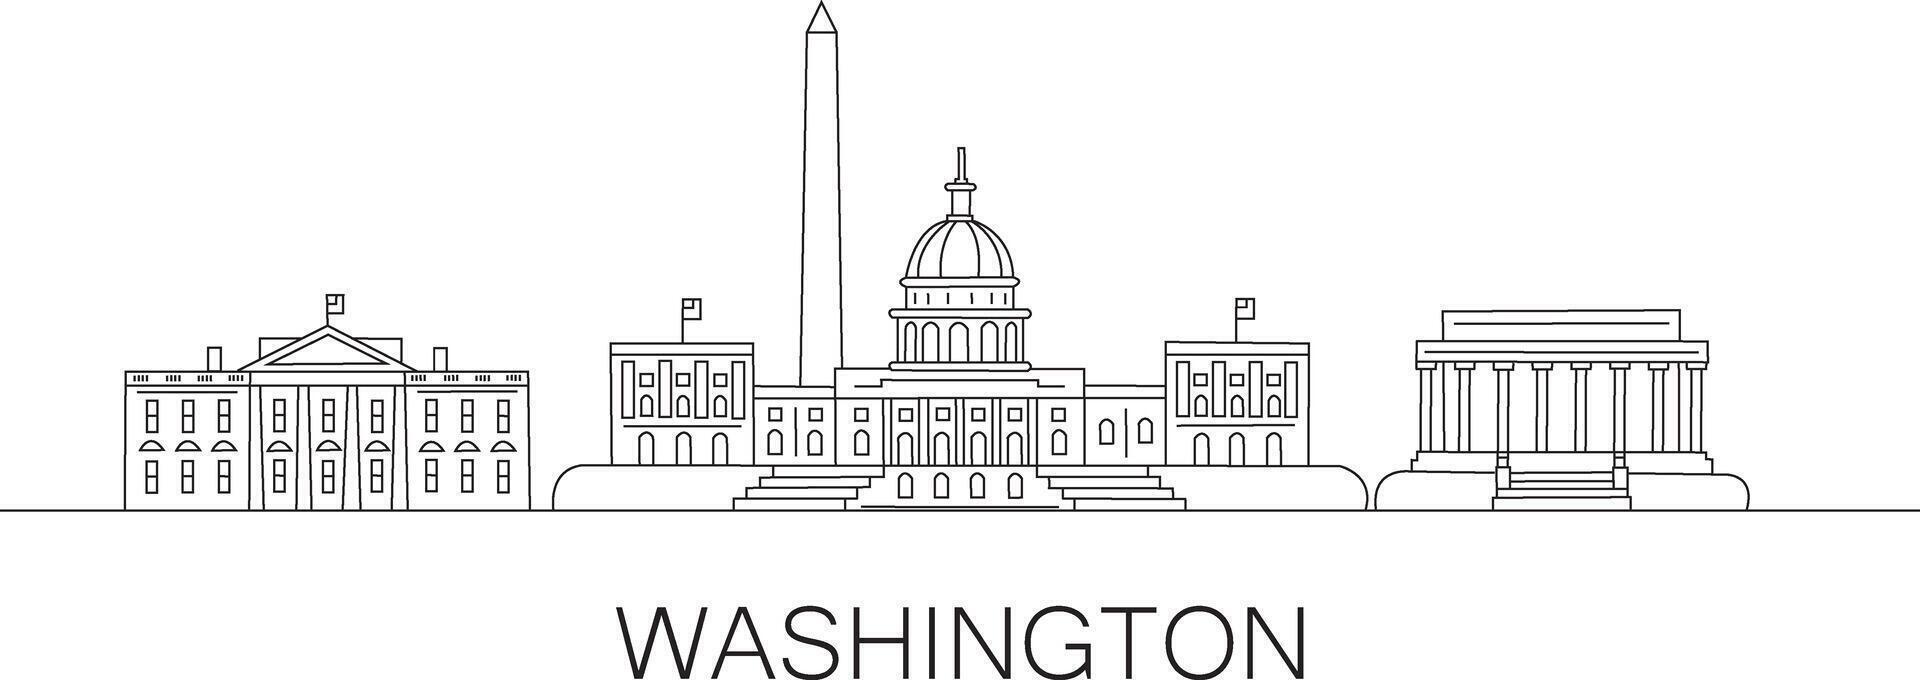 Washington ciudad línea dibujar vector